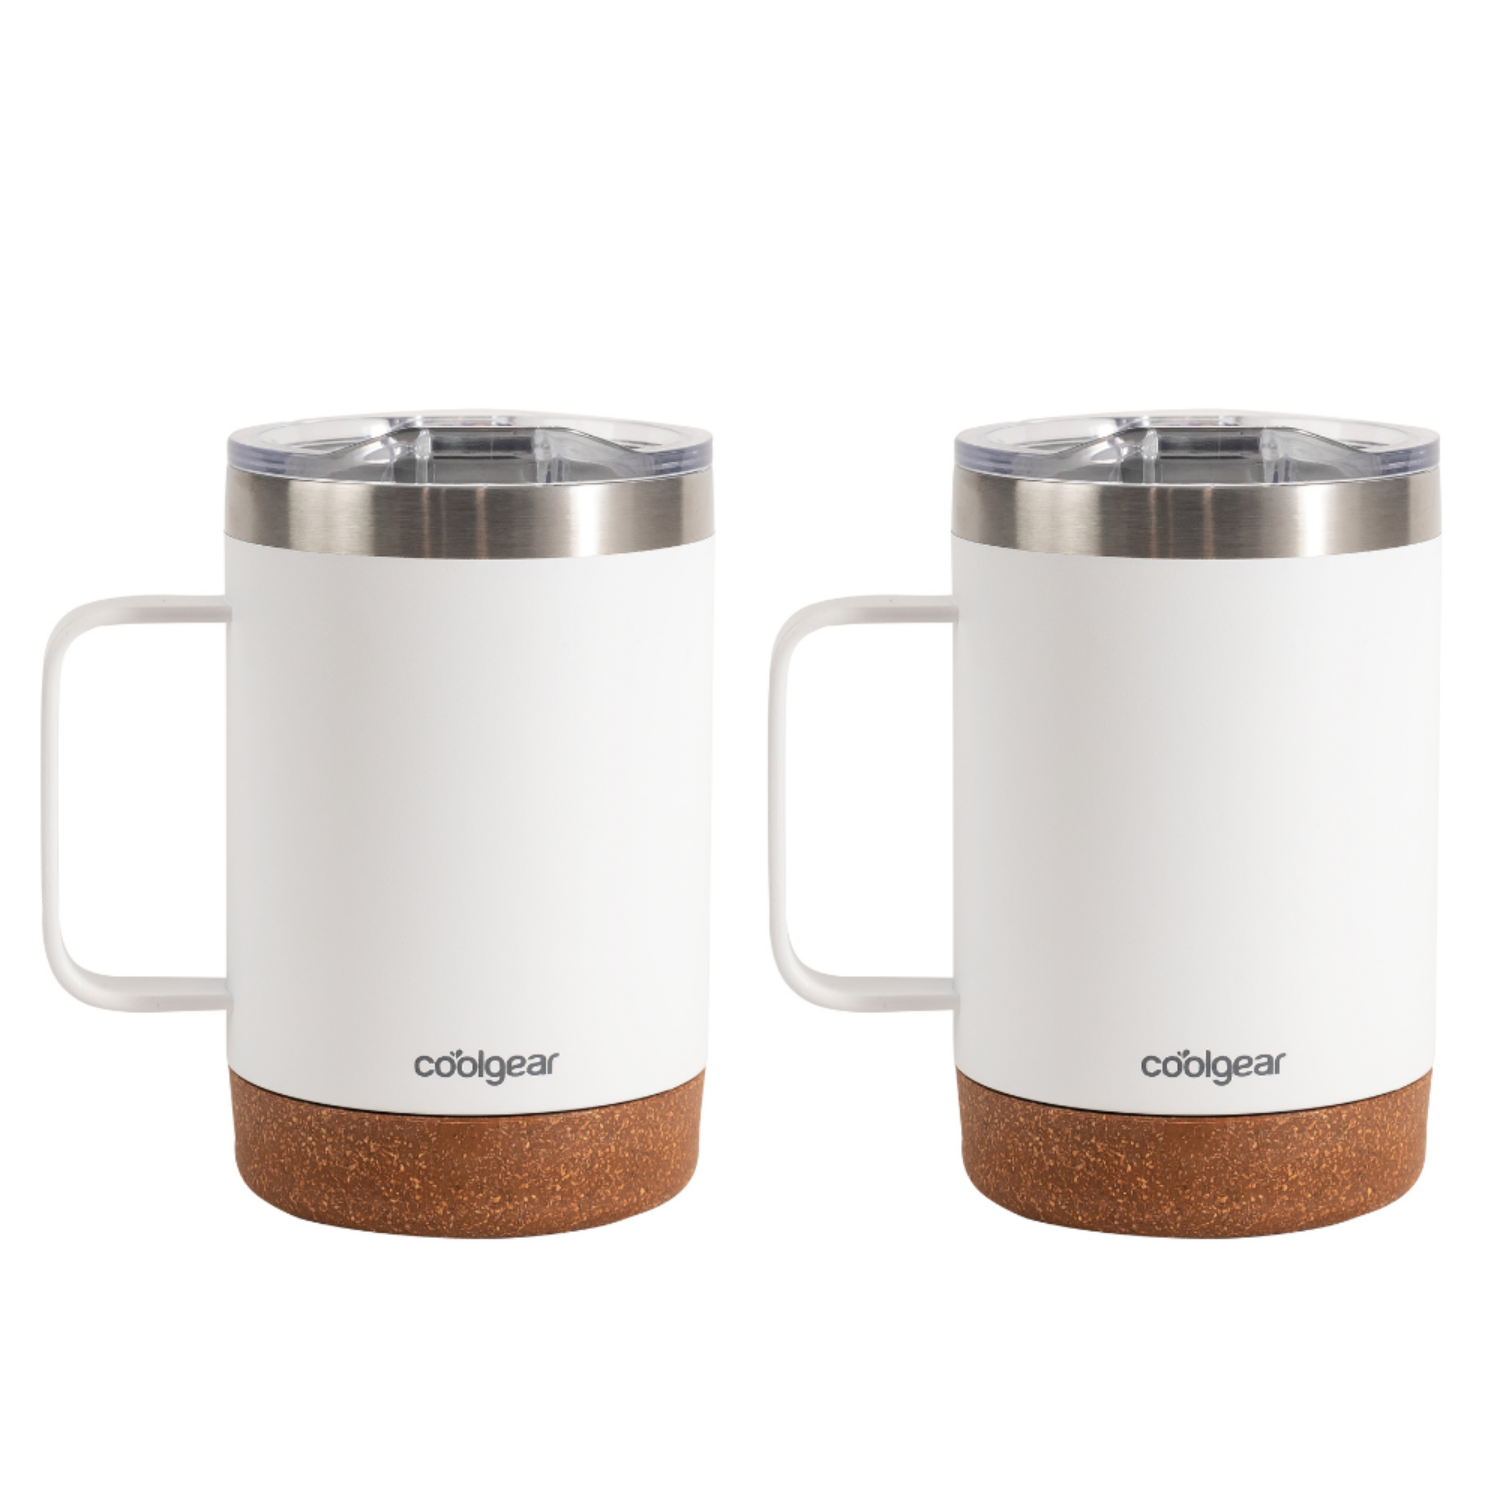 Contigo Superior 2.0 20-oz. Stainless Steel Travel Mug with Handle